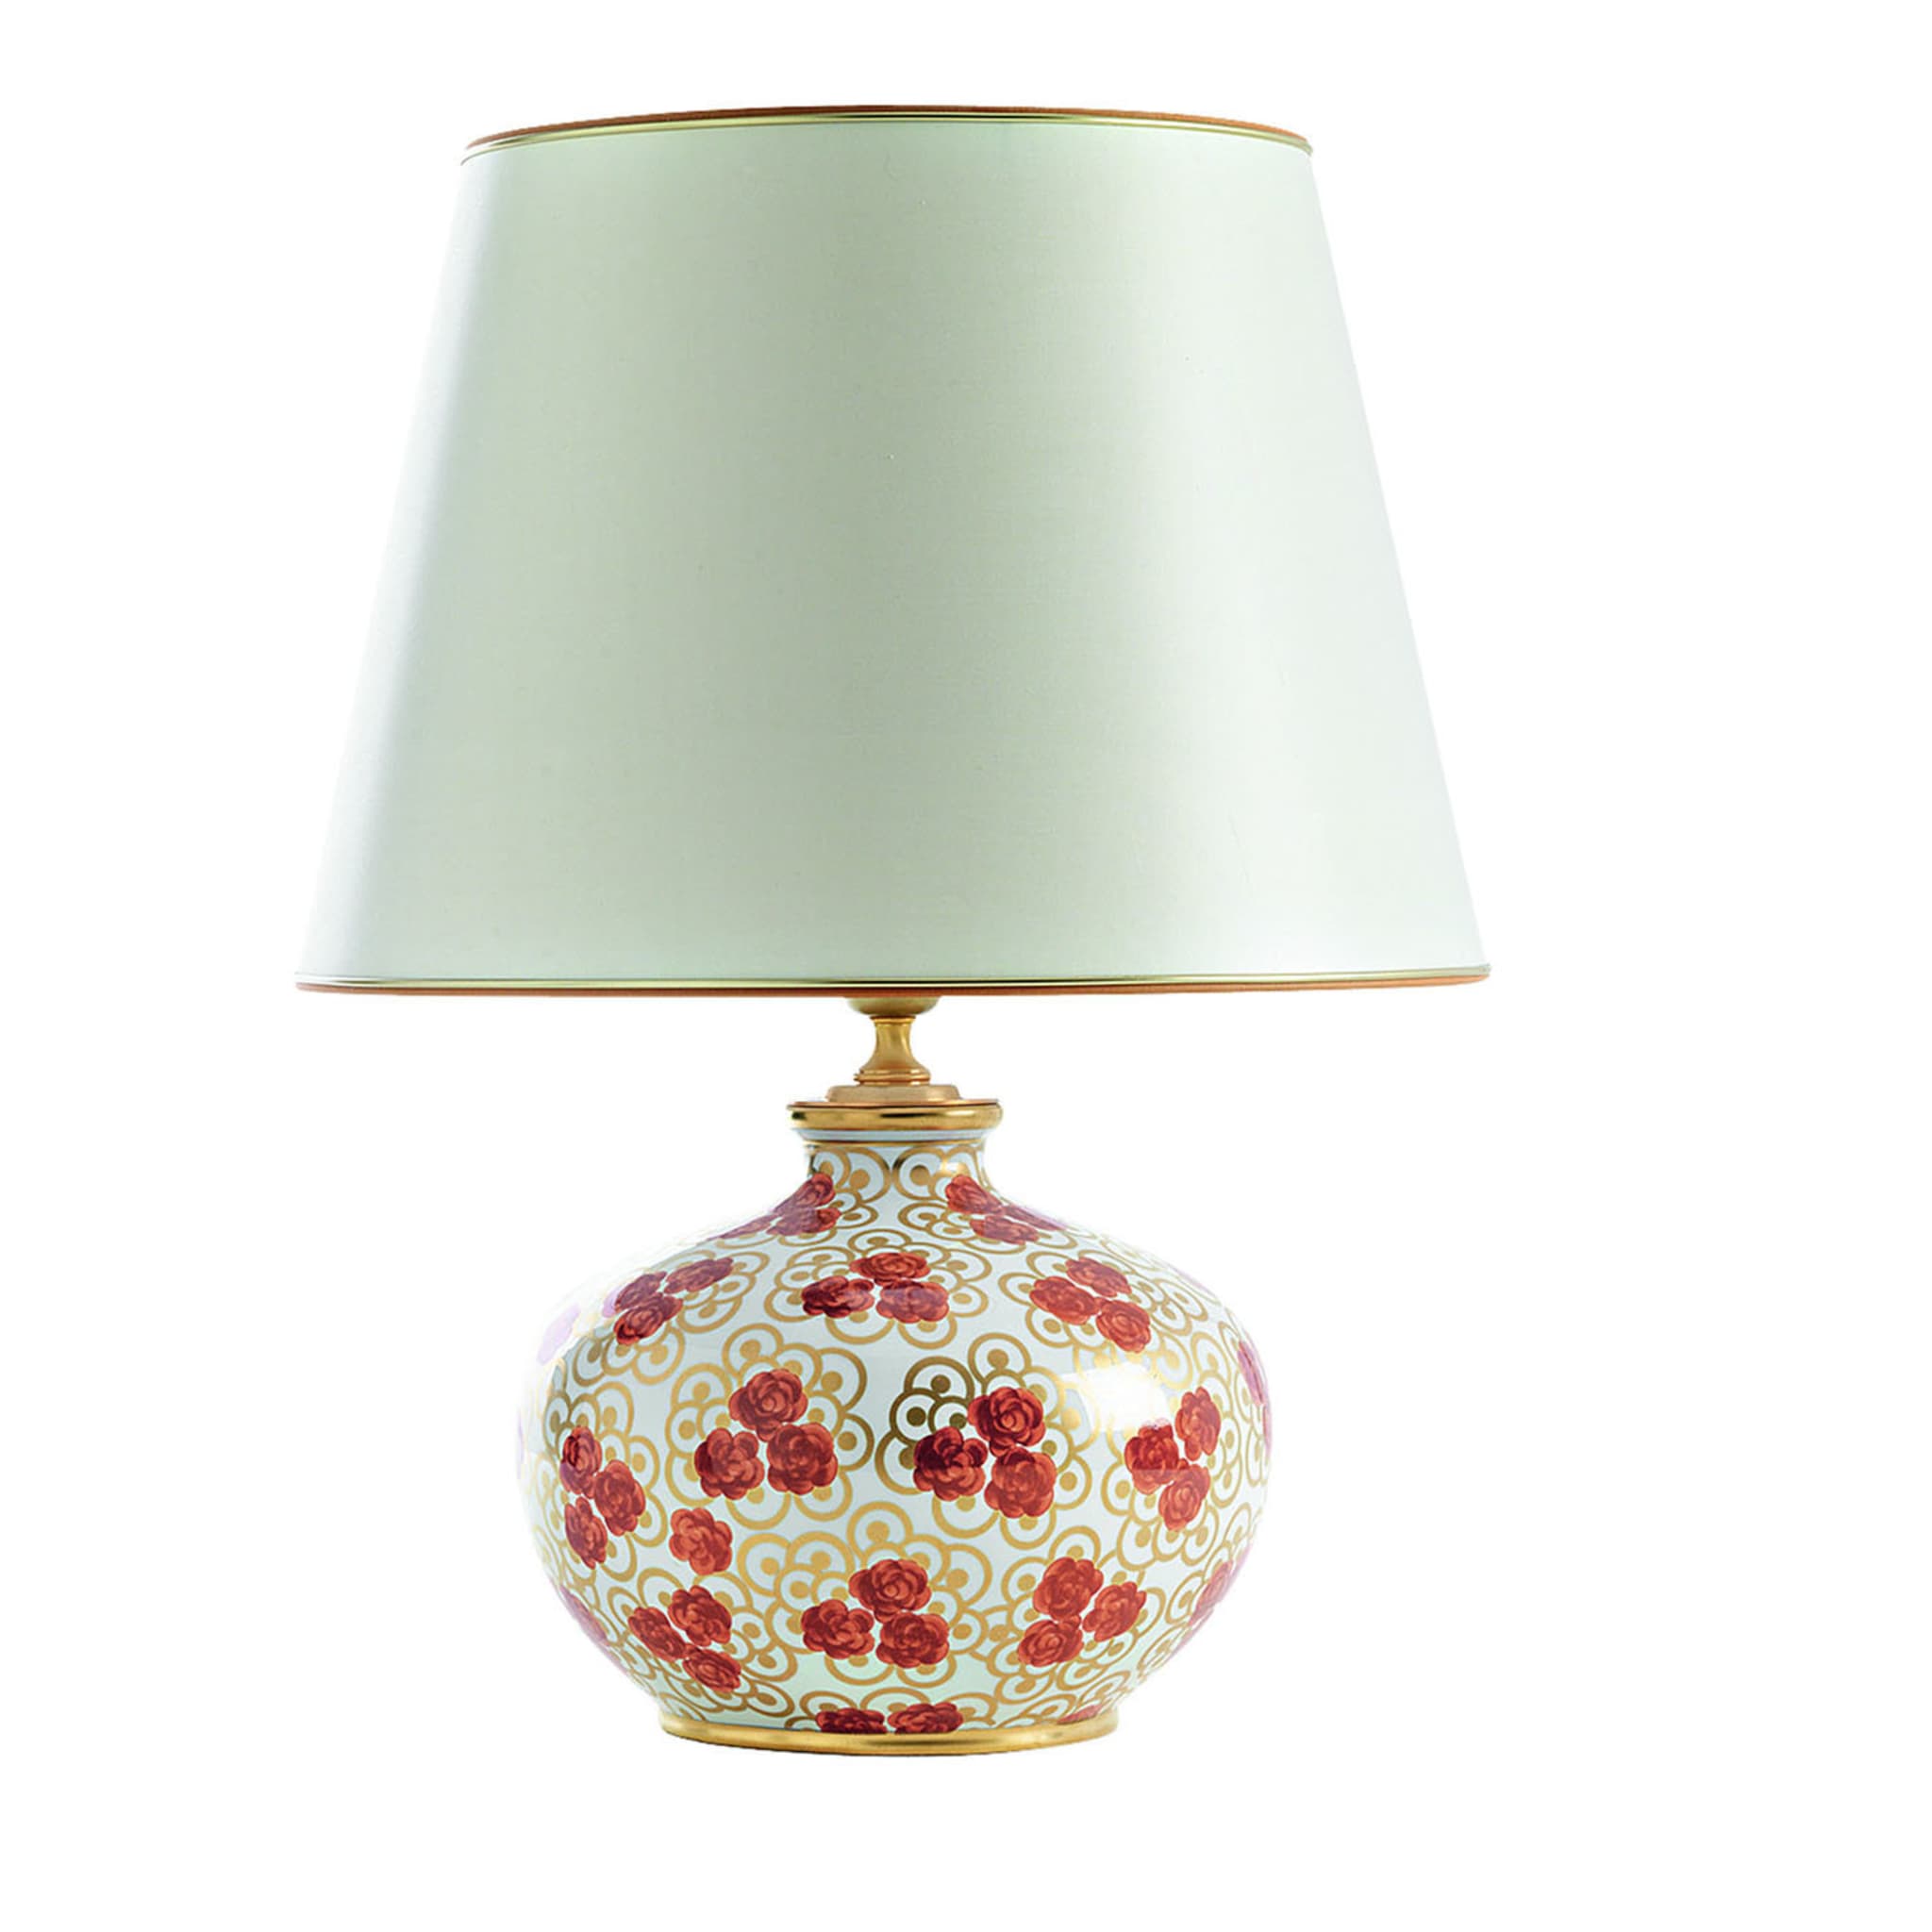 Rose Rosse Table Lamp - Main view